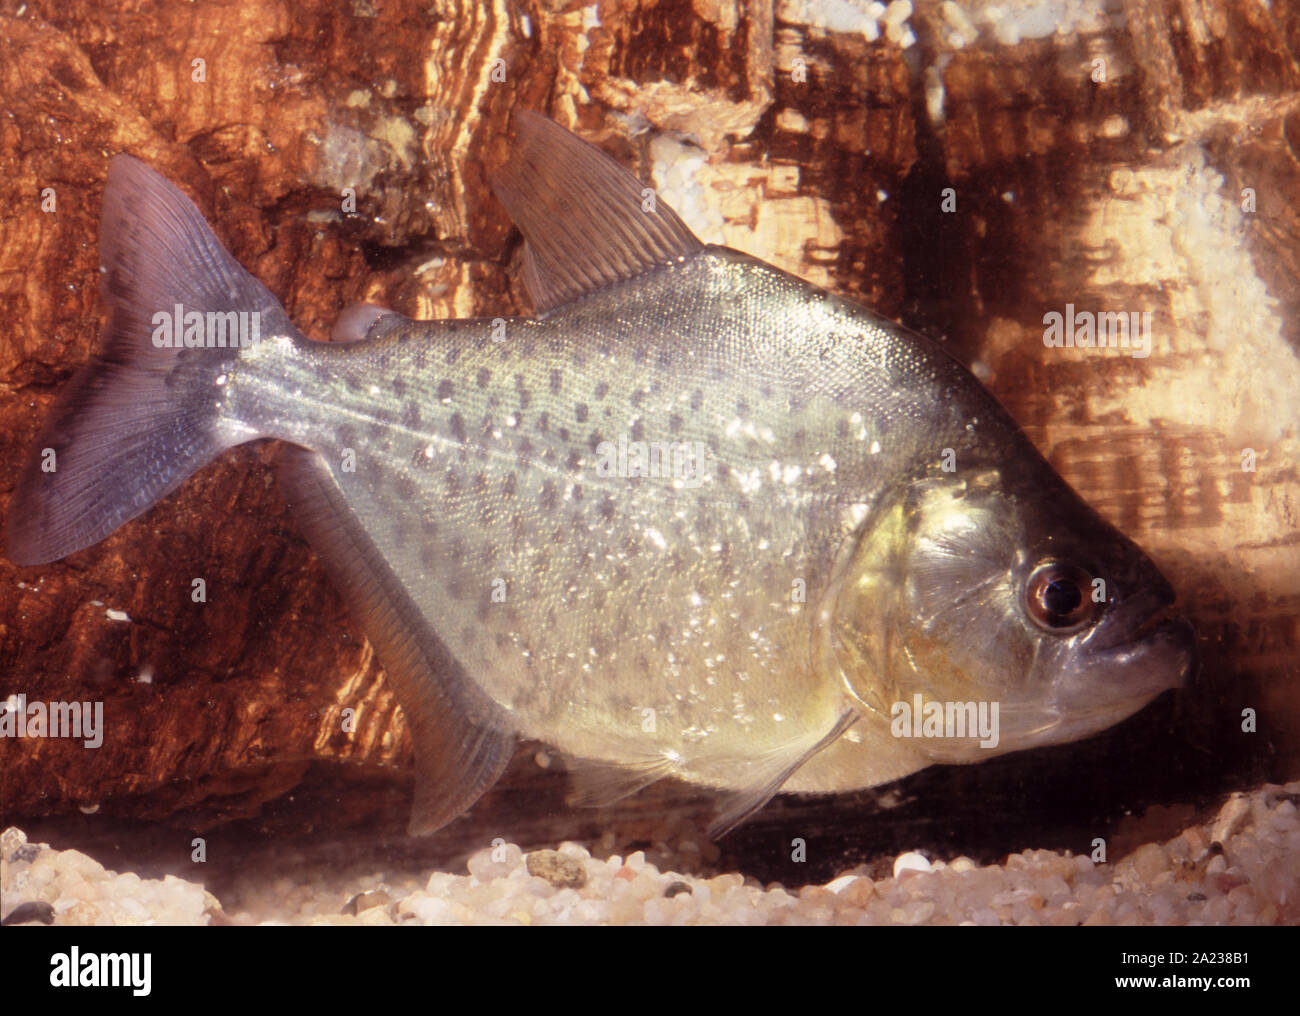 White piranha, Serrasalmus brandtii Stock Photo